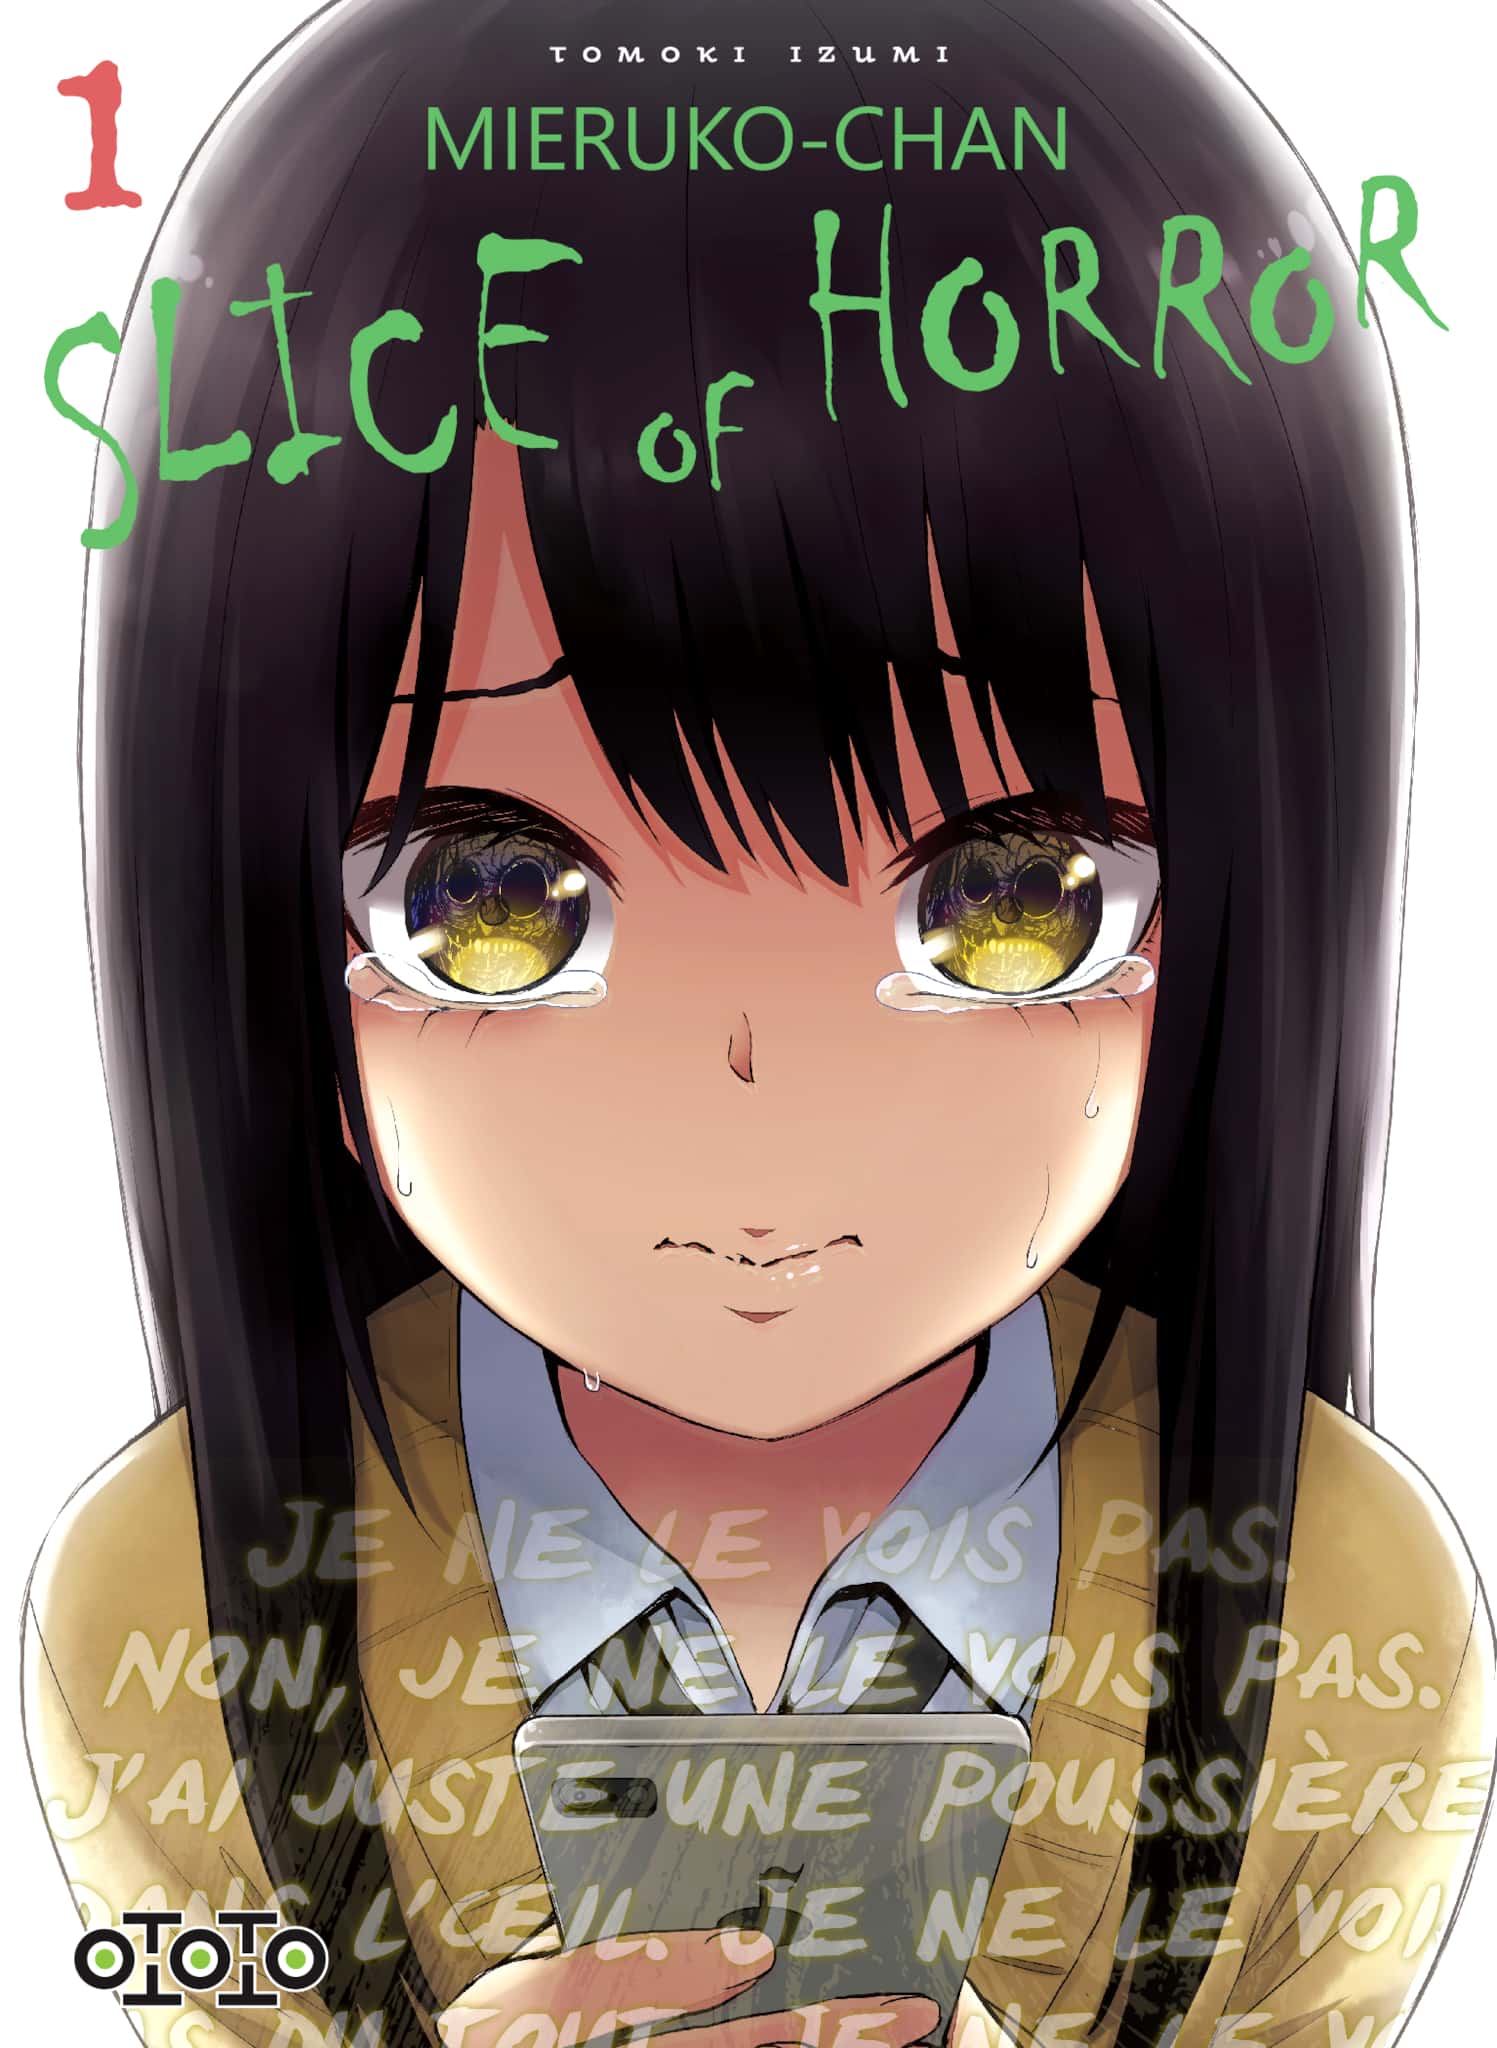 Tome 1 du manga Mieruko-chan - Slice of Horror